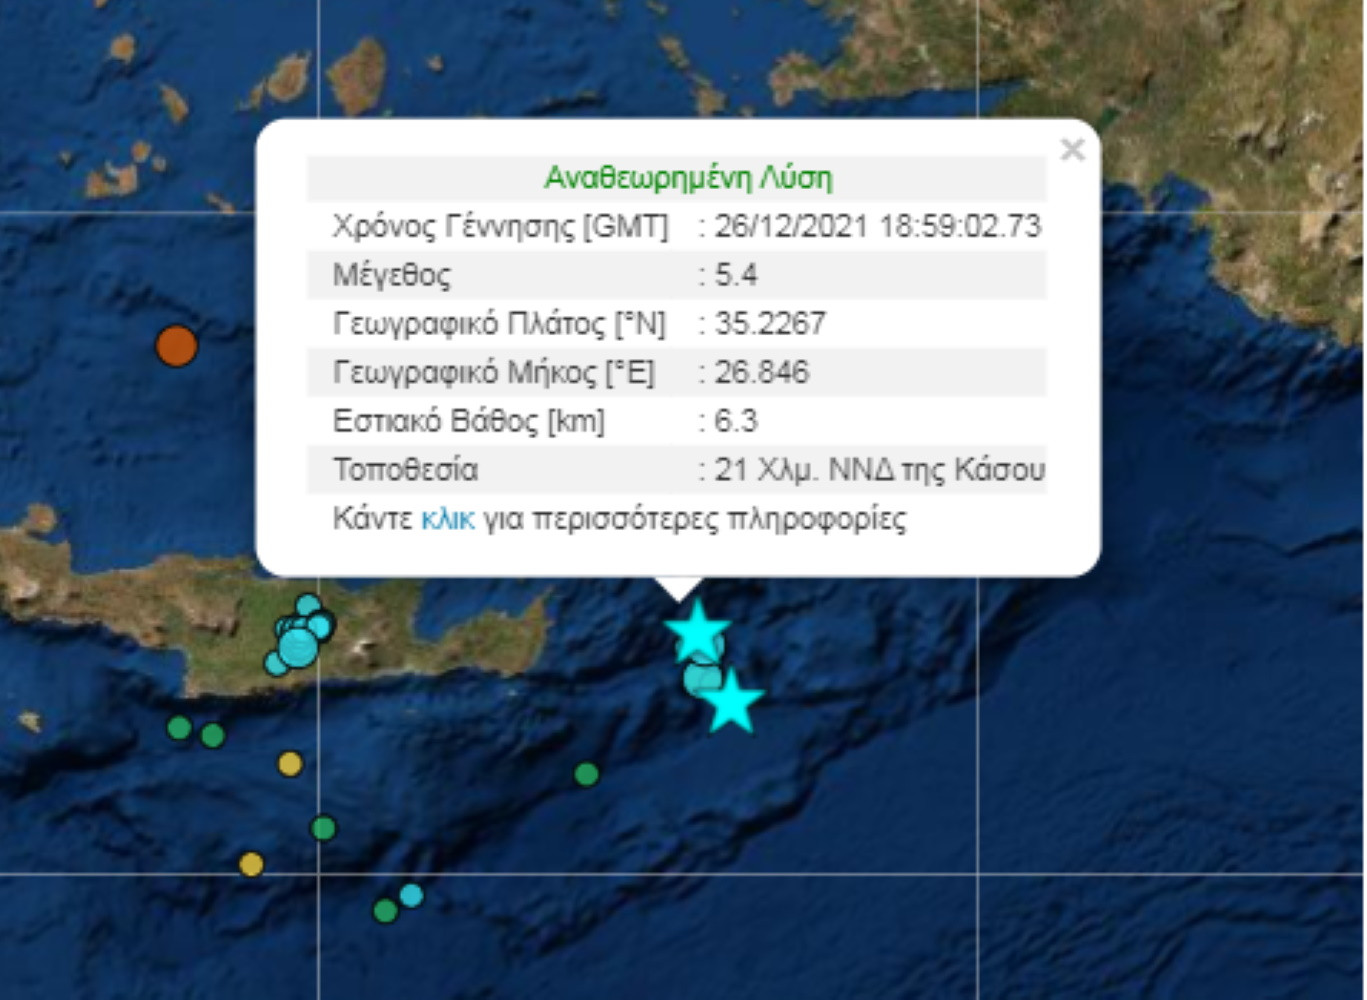 Νέος σεισμός μεταξύ Κρήτης και Κάσου